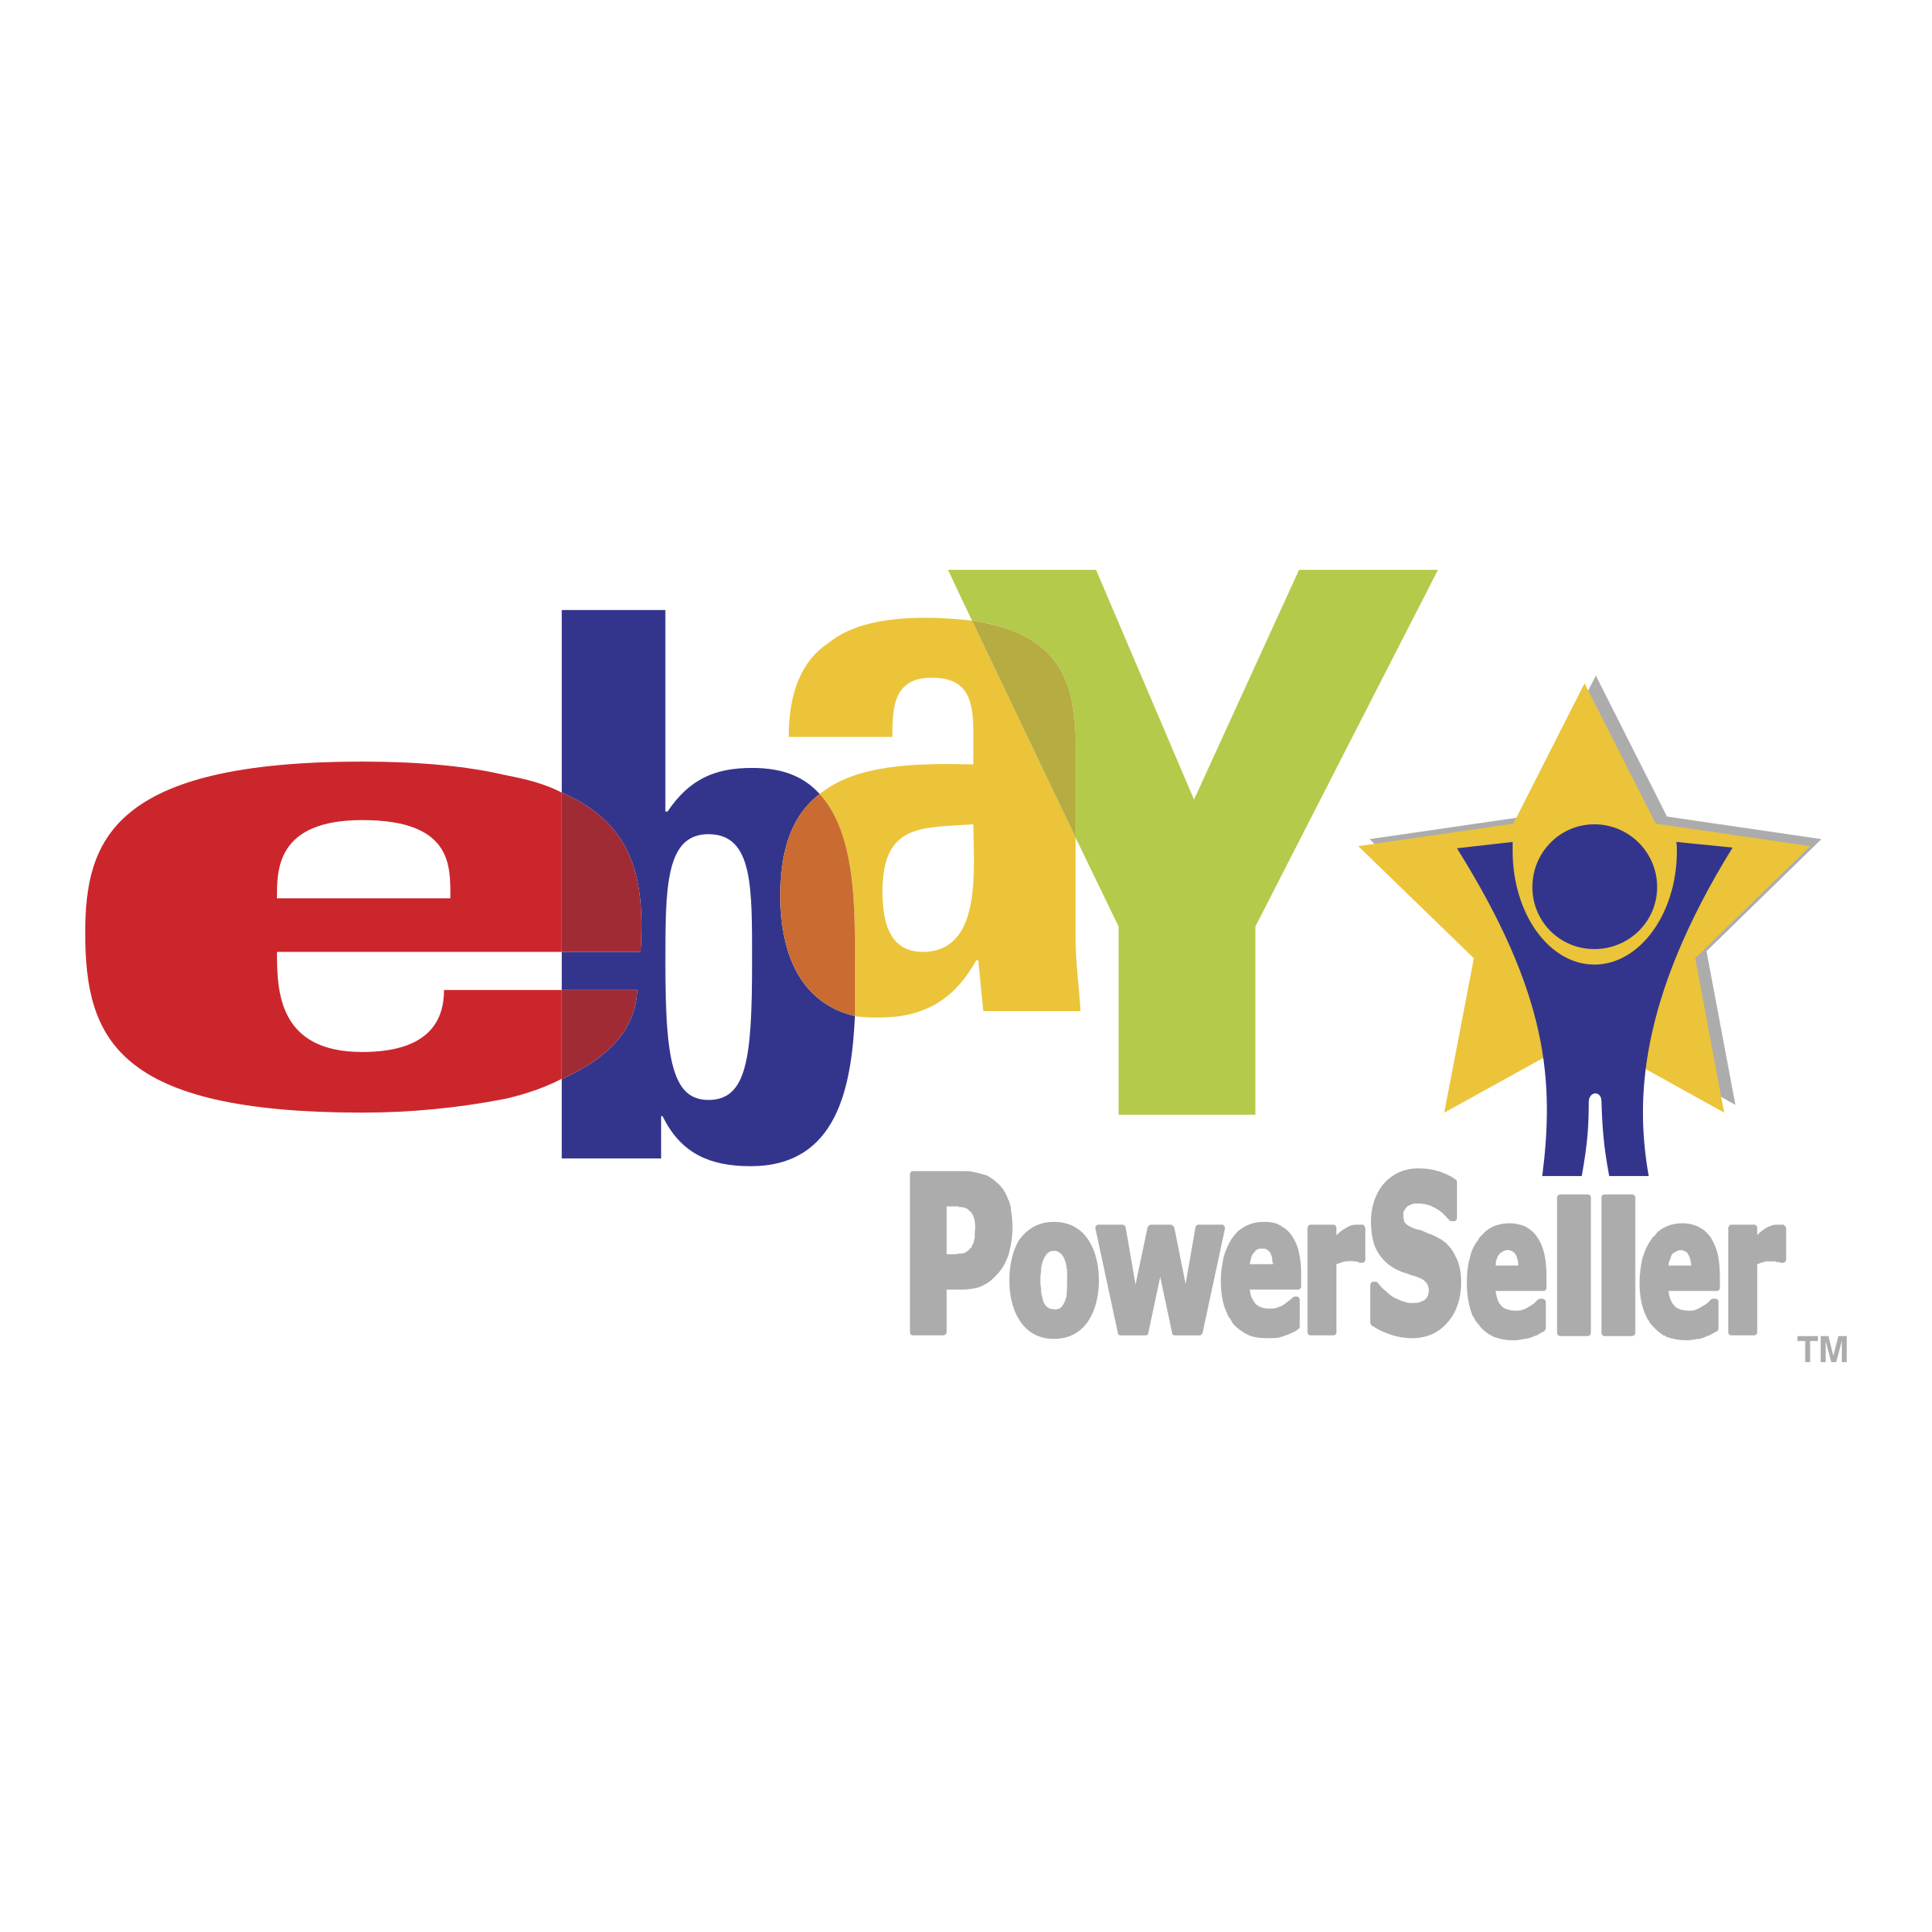 Vector Ebay logo immagini trasparenti